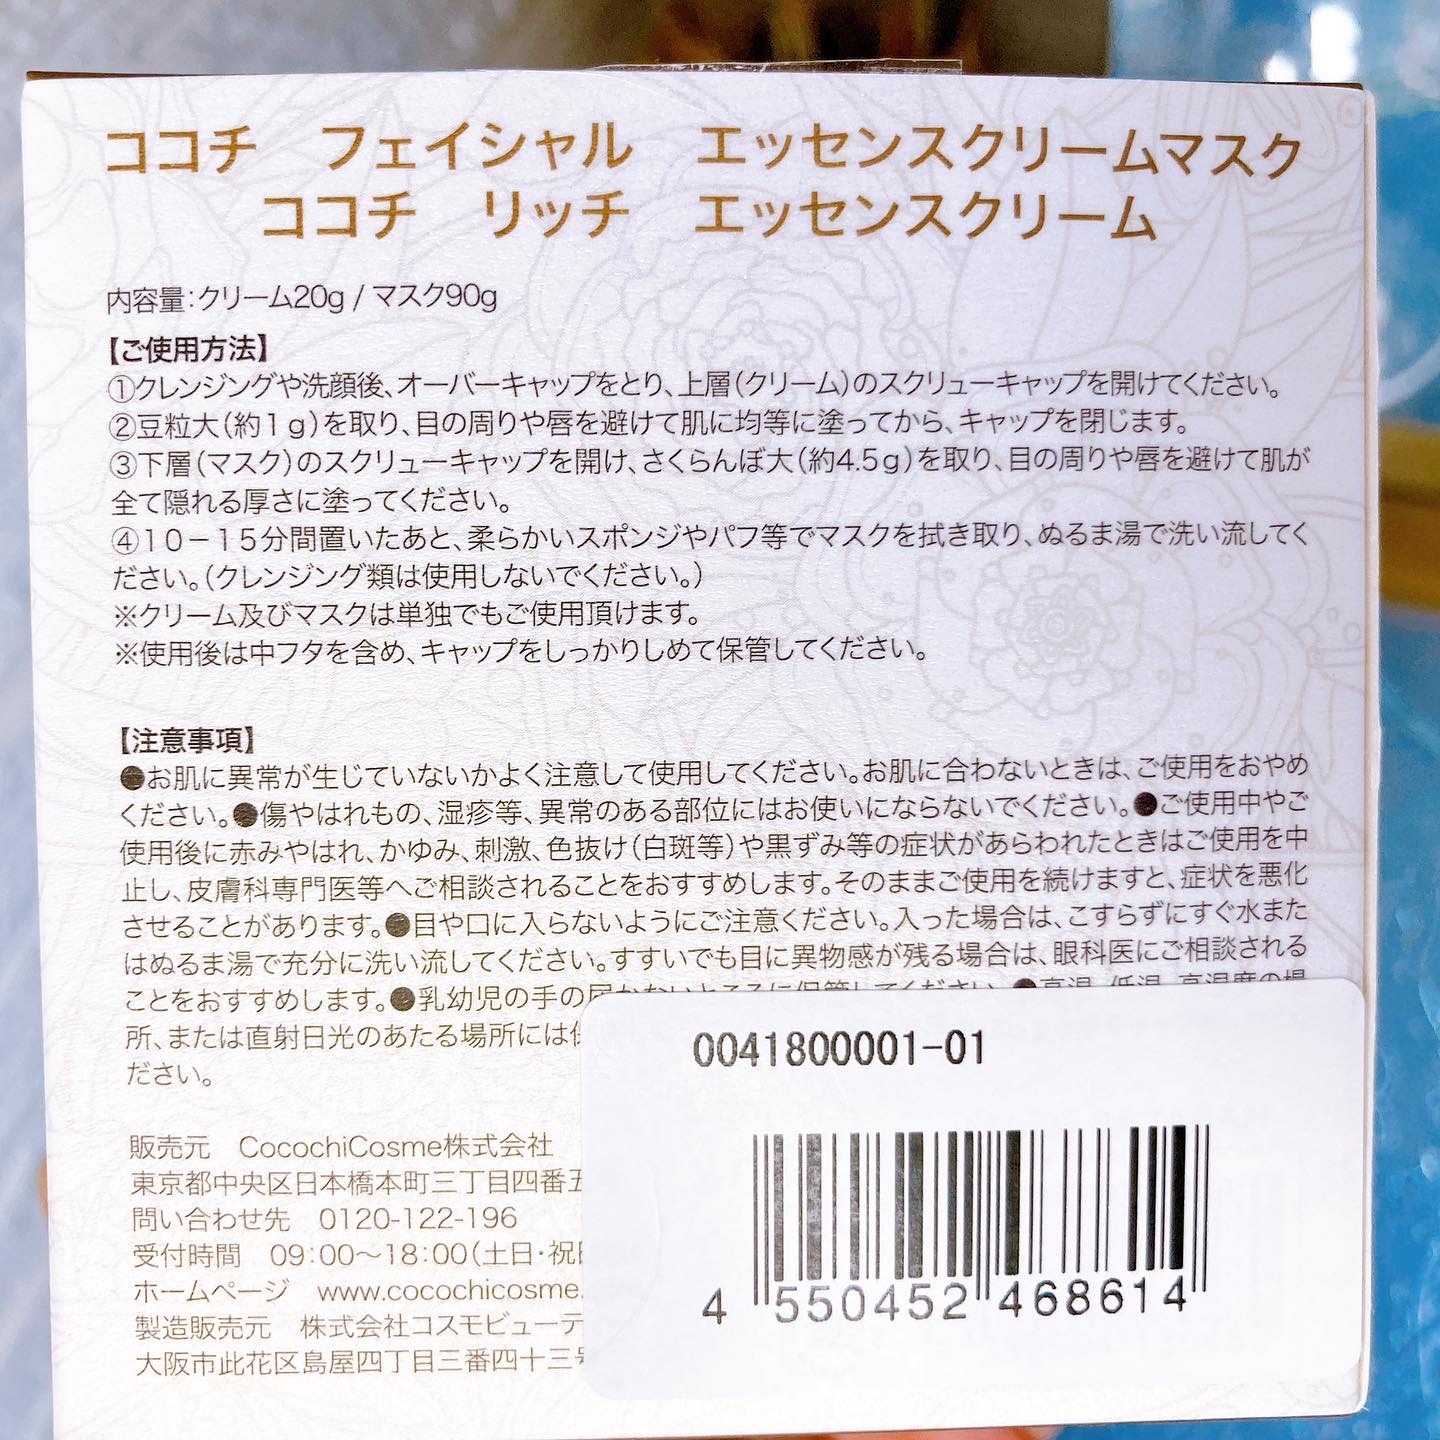 cocochi　cosmeフェイシャルエッセンスクリームマスク90g/4,510円税込を使ったメグさんのクチコミ画像5